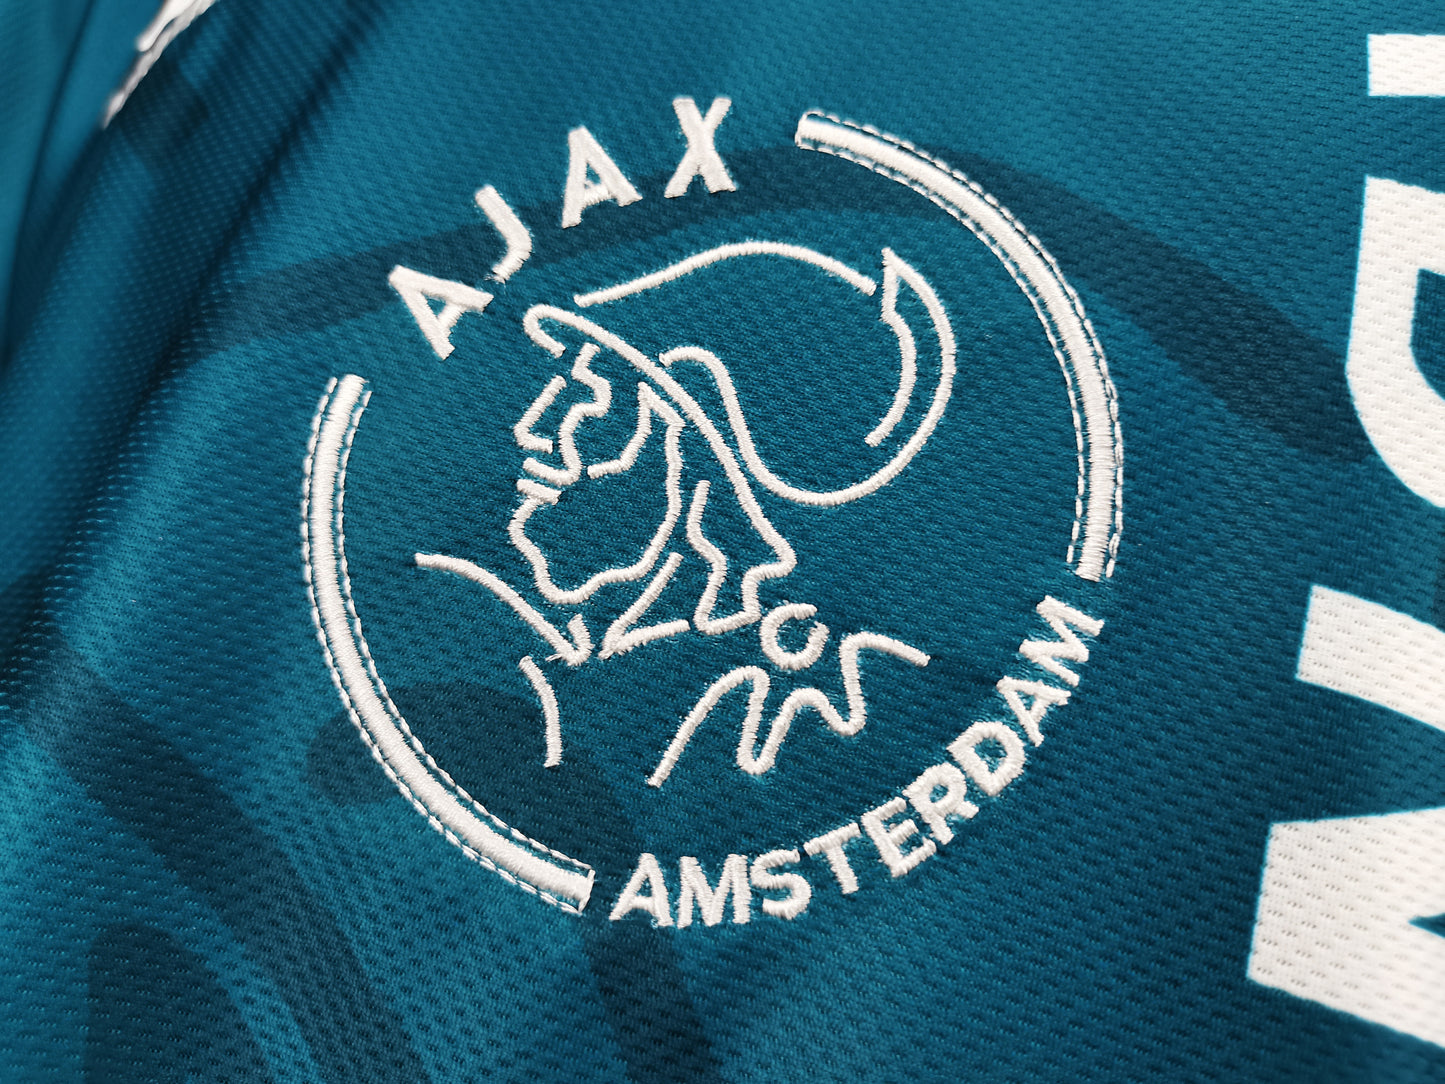 Ajax 95-96 Away Shirt